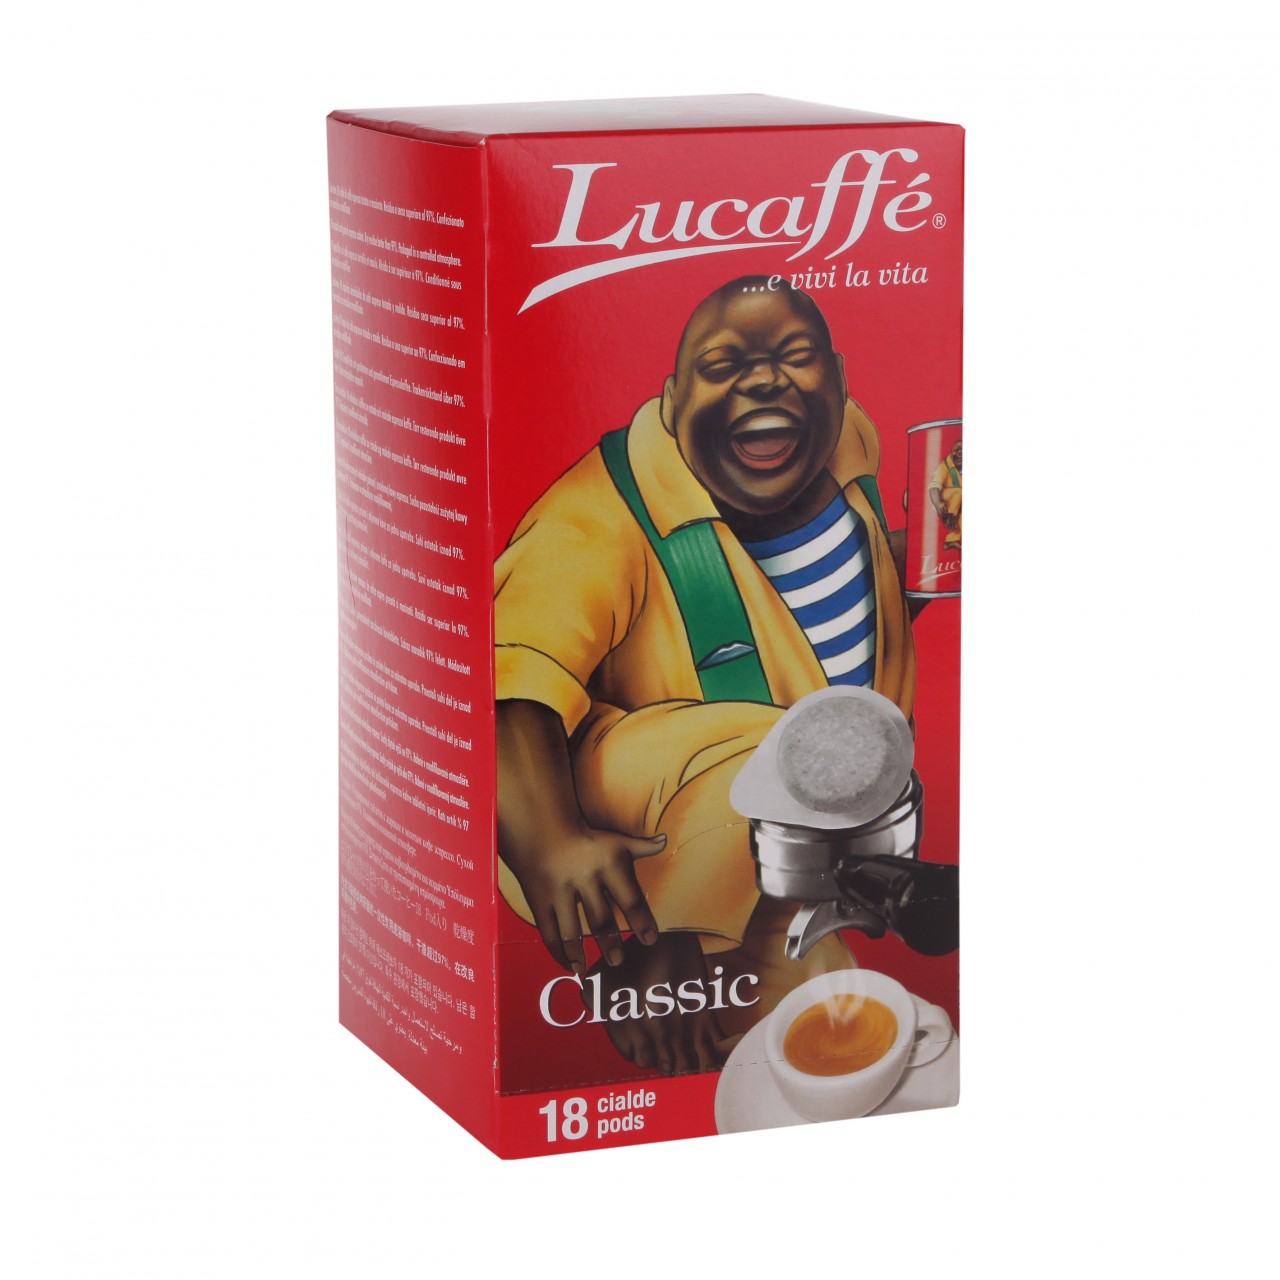 Lucaffé Classic Pads, 15 Pcs